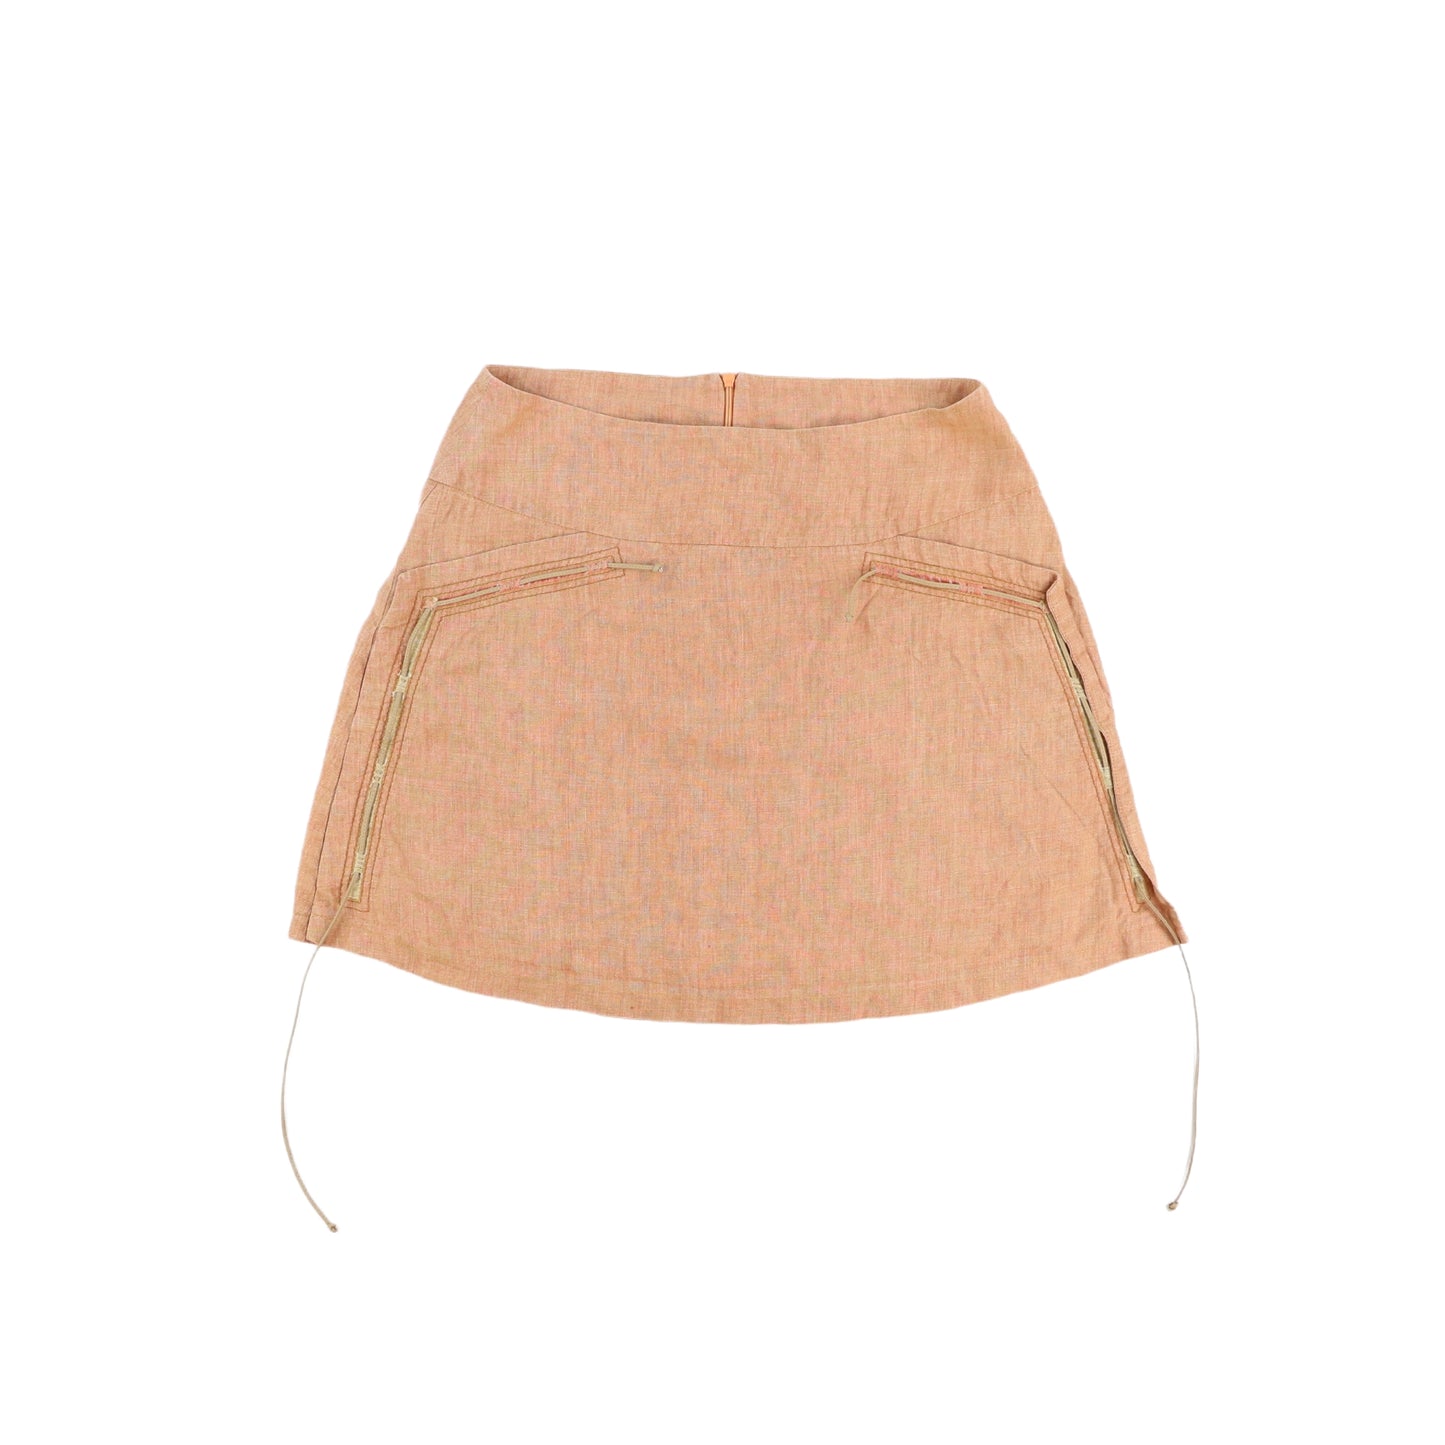 90s Mini Skirt (M)